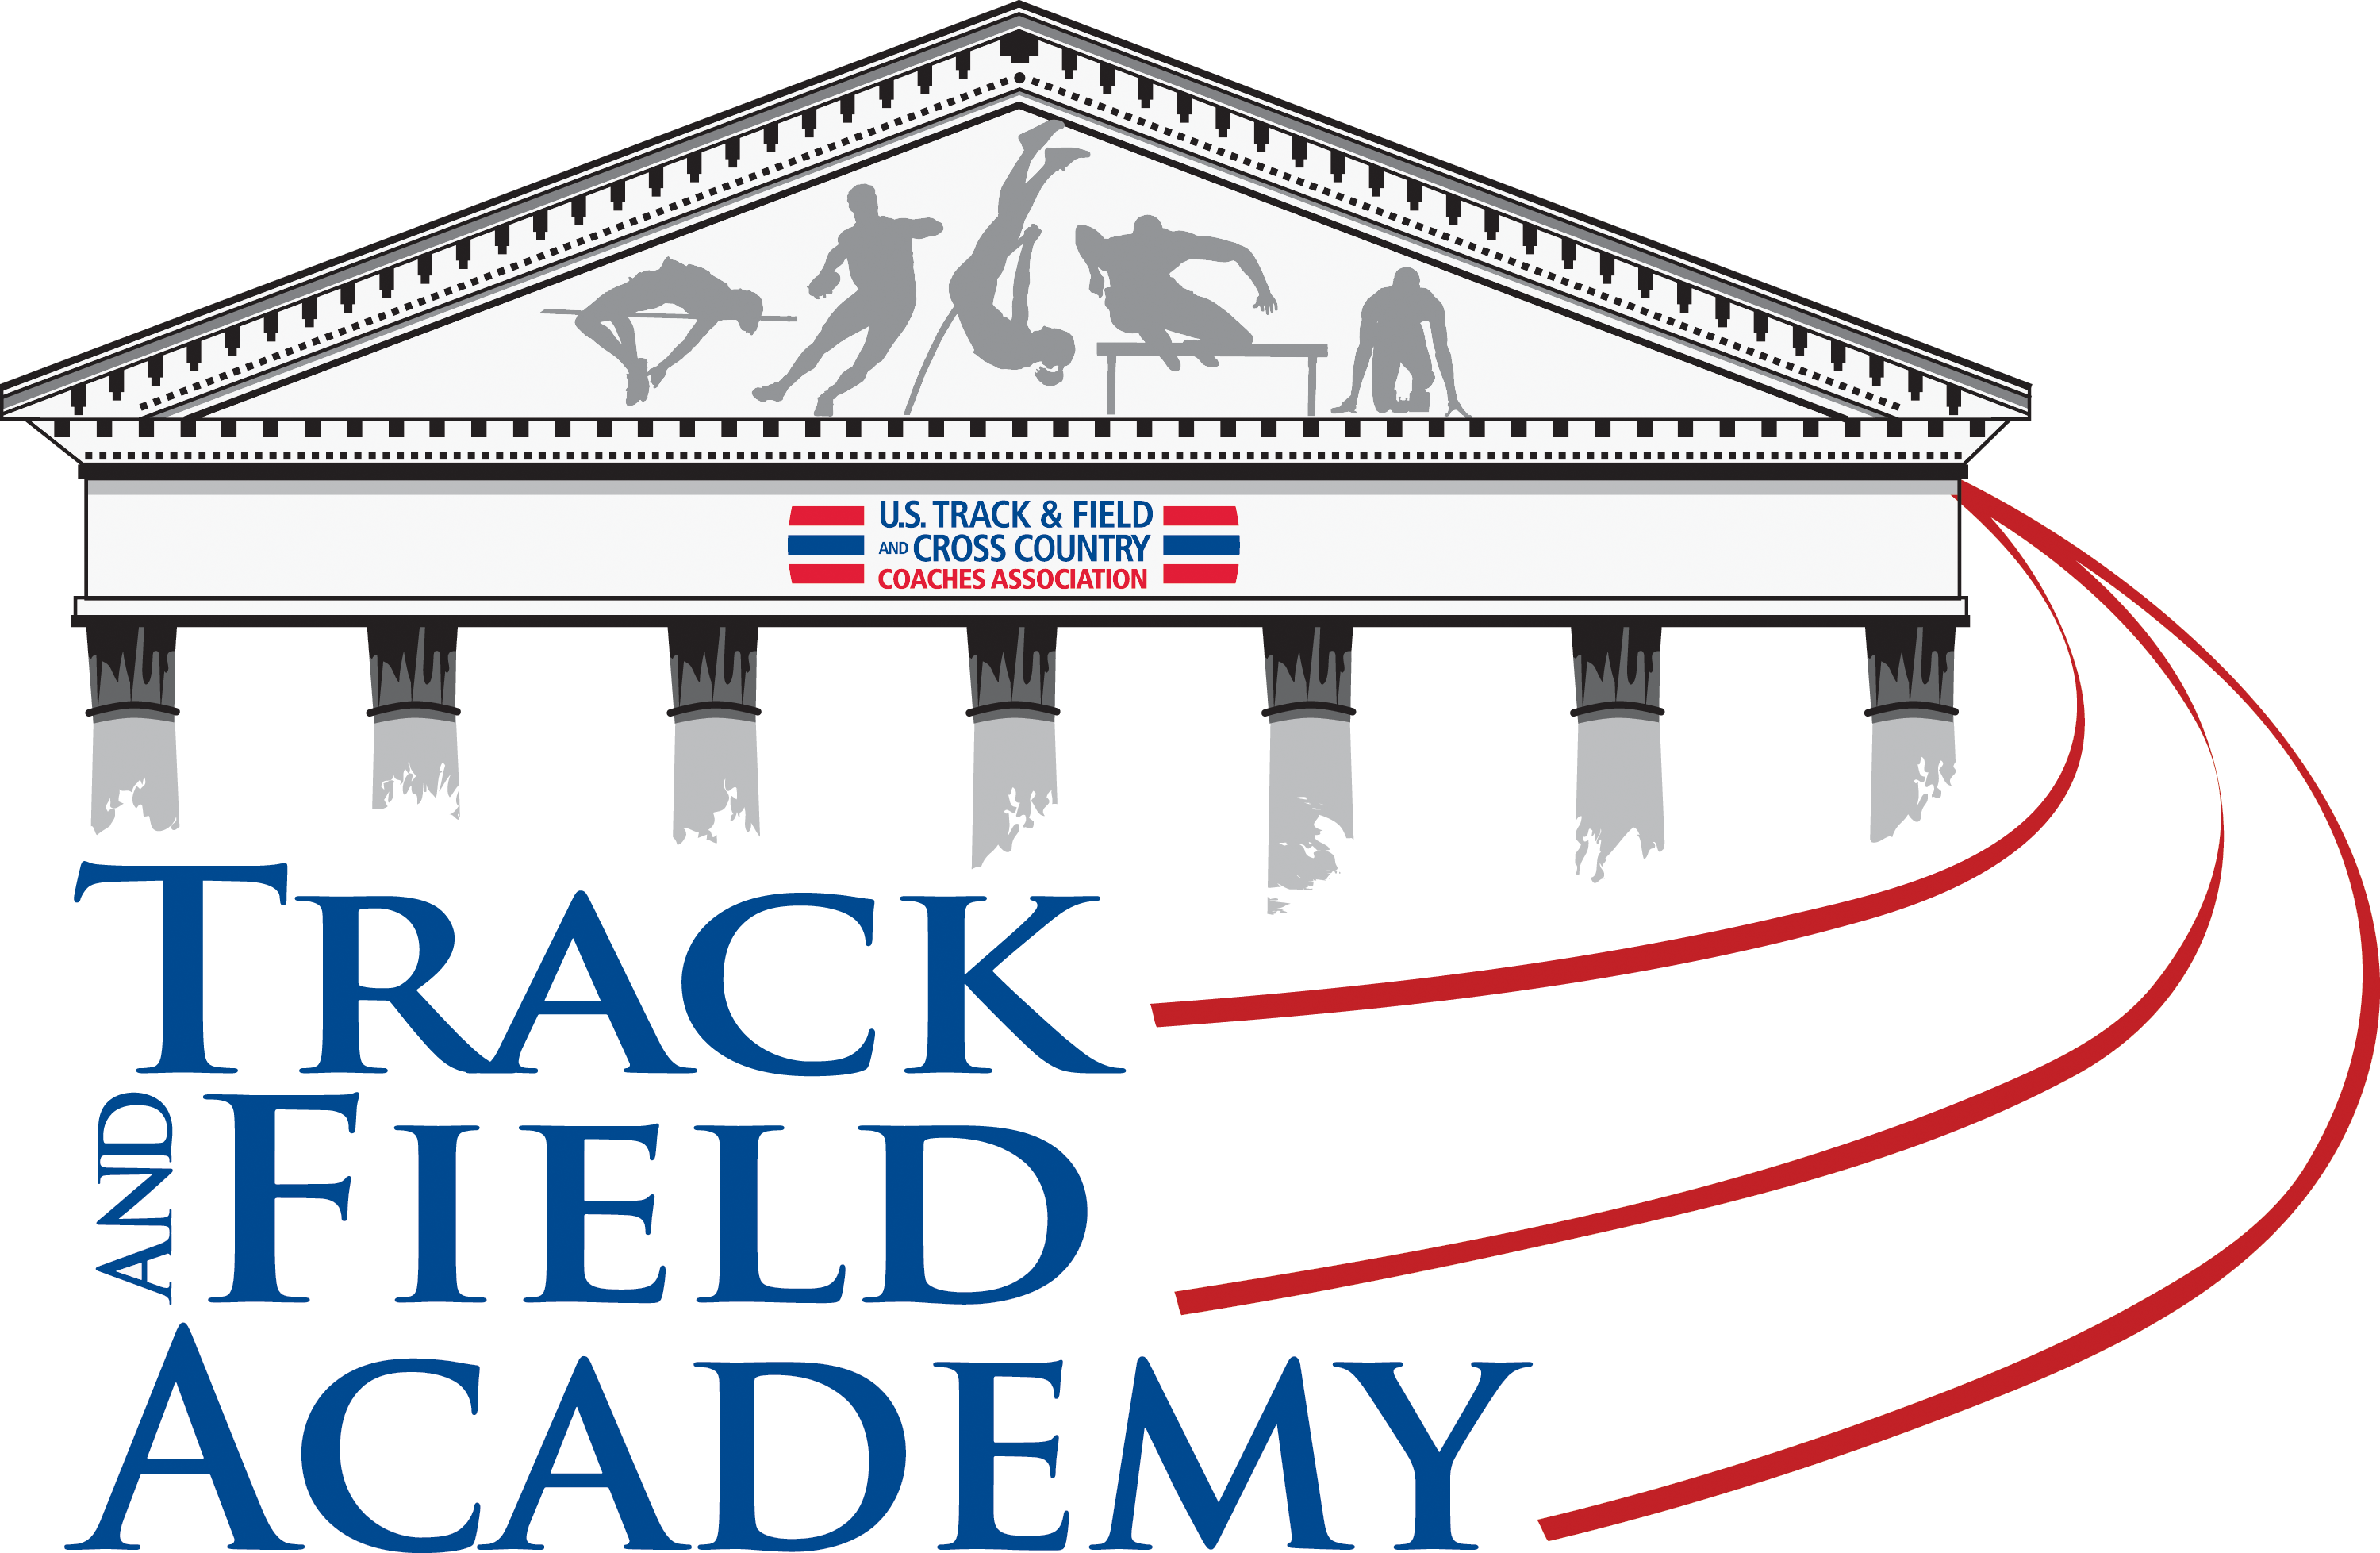 Track & Field Academy - Academy (3000x1957)